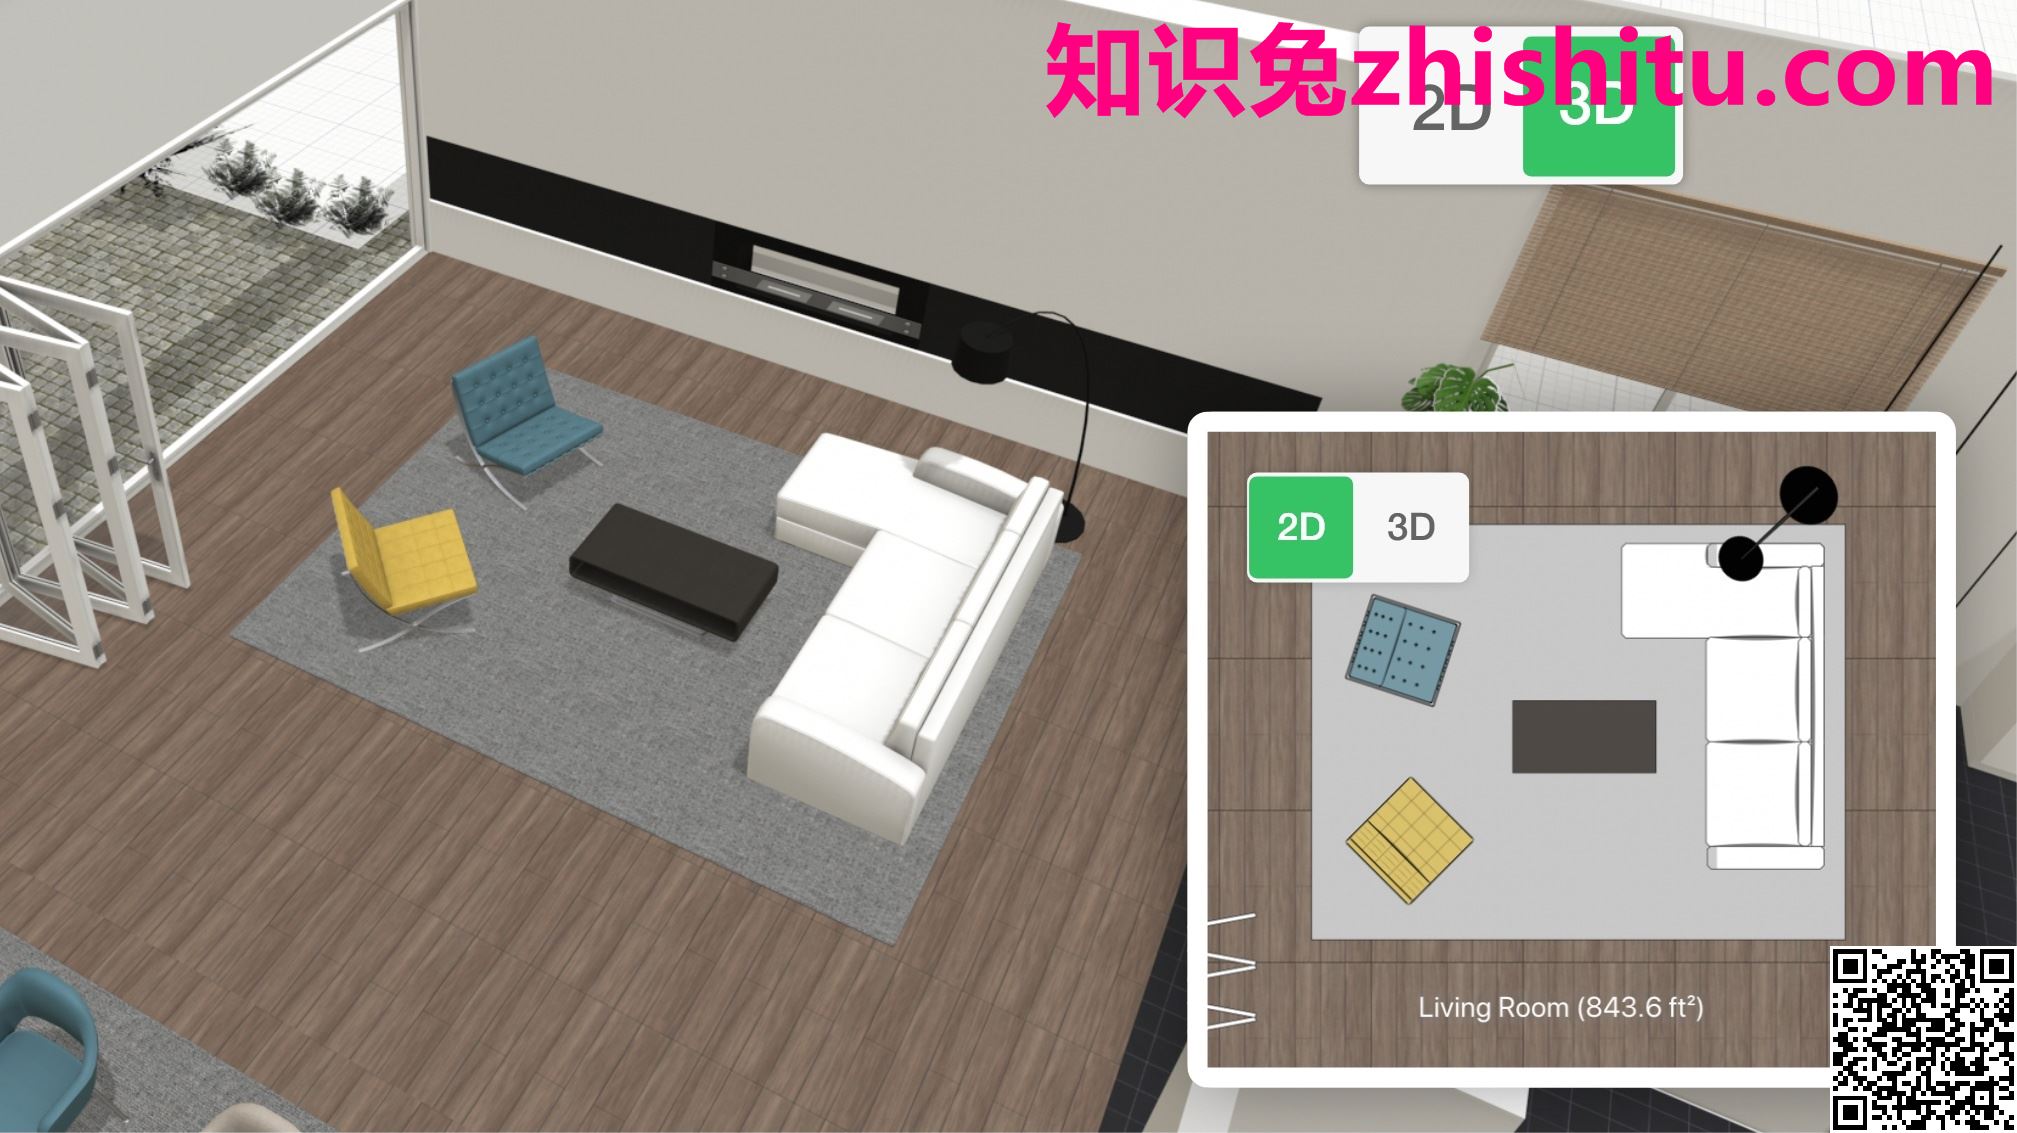 3D Room Planner Online | Free 3D Room Design – Planner 5D